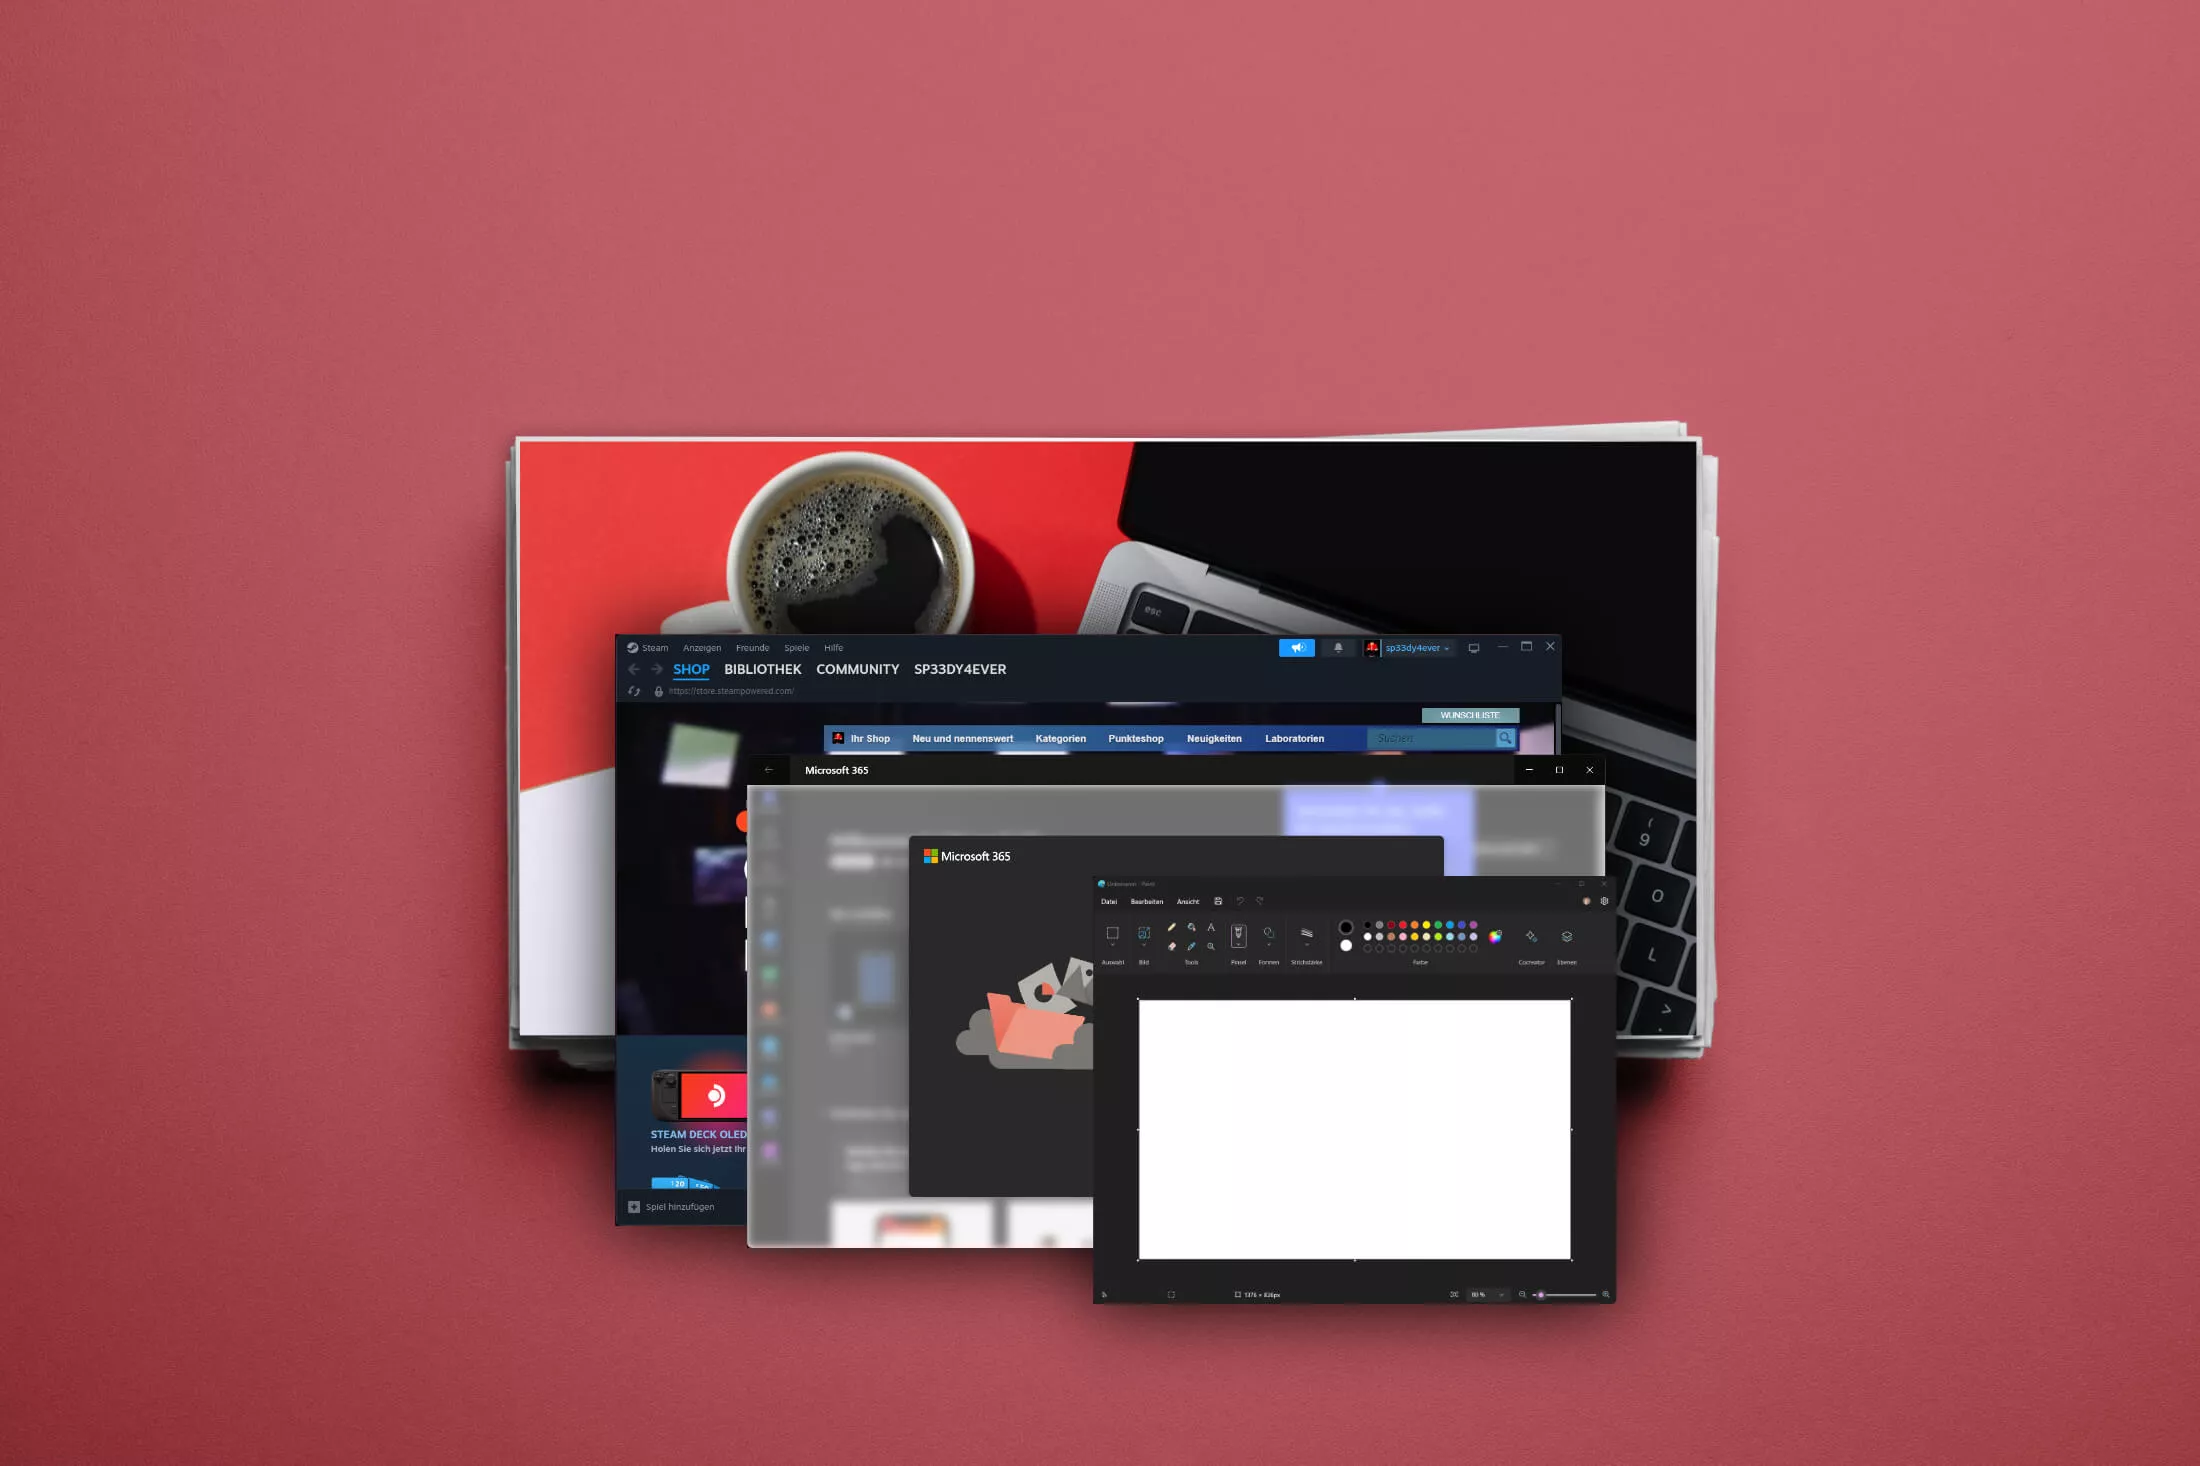 Wie können Sie Ihre Windows-Programme auf Ihrem Mac nutzen?